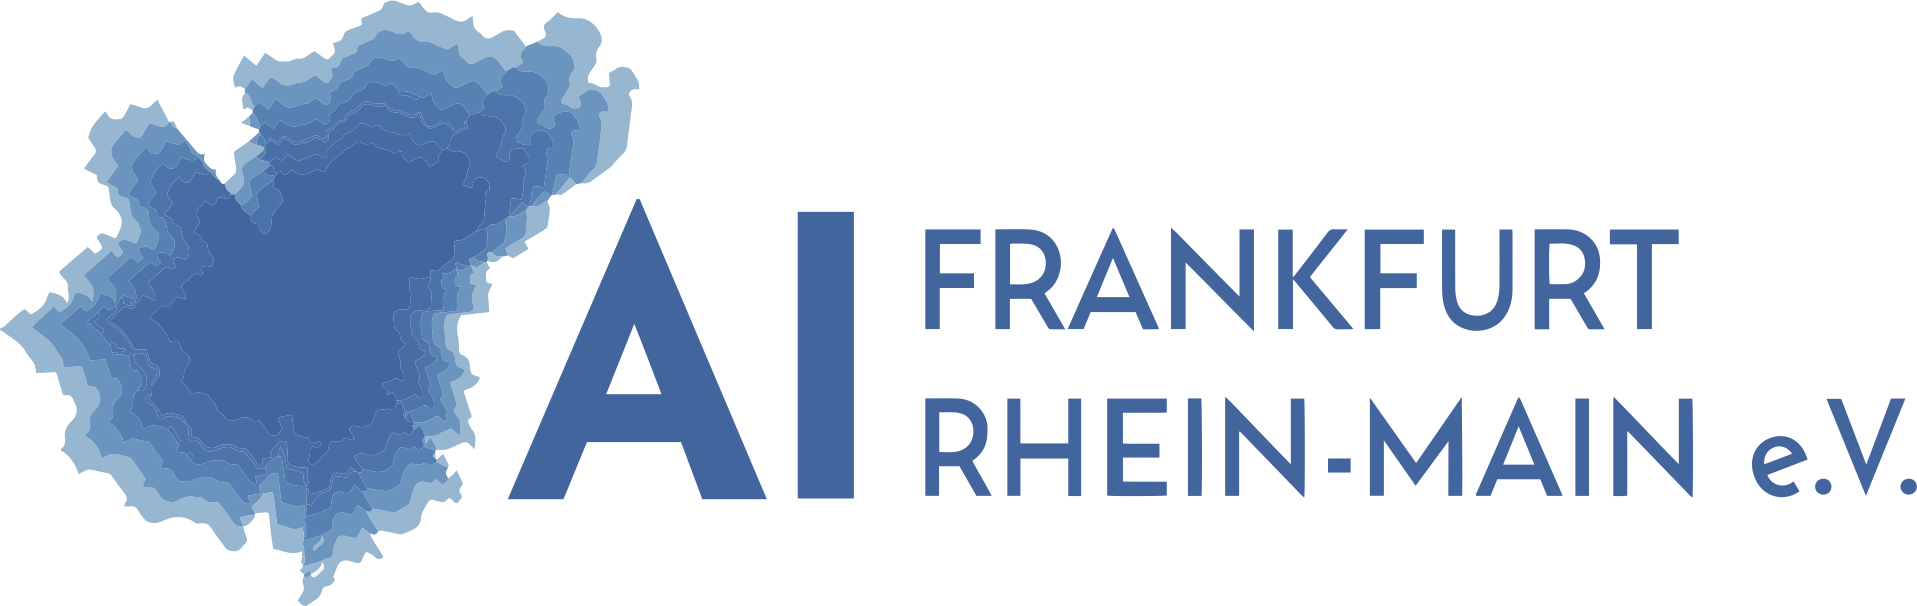 AI Frankfurt Rhein-Main e.V.